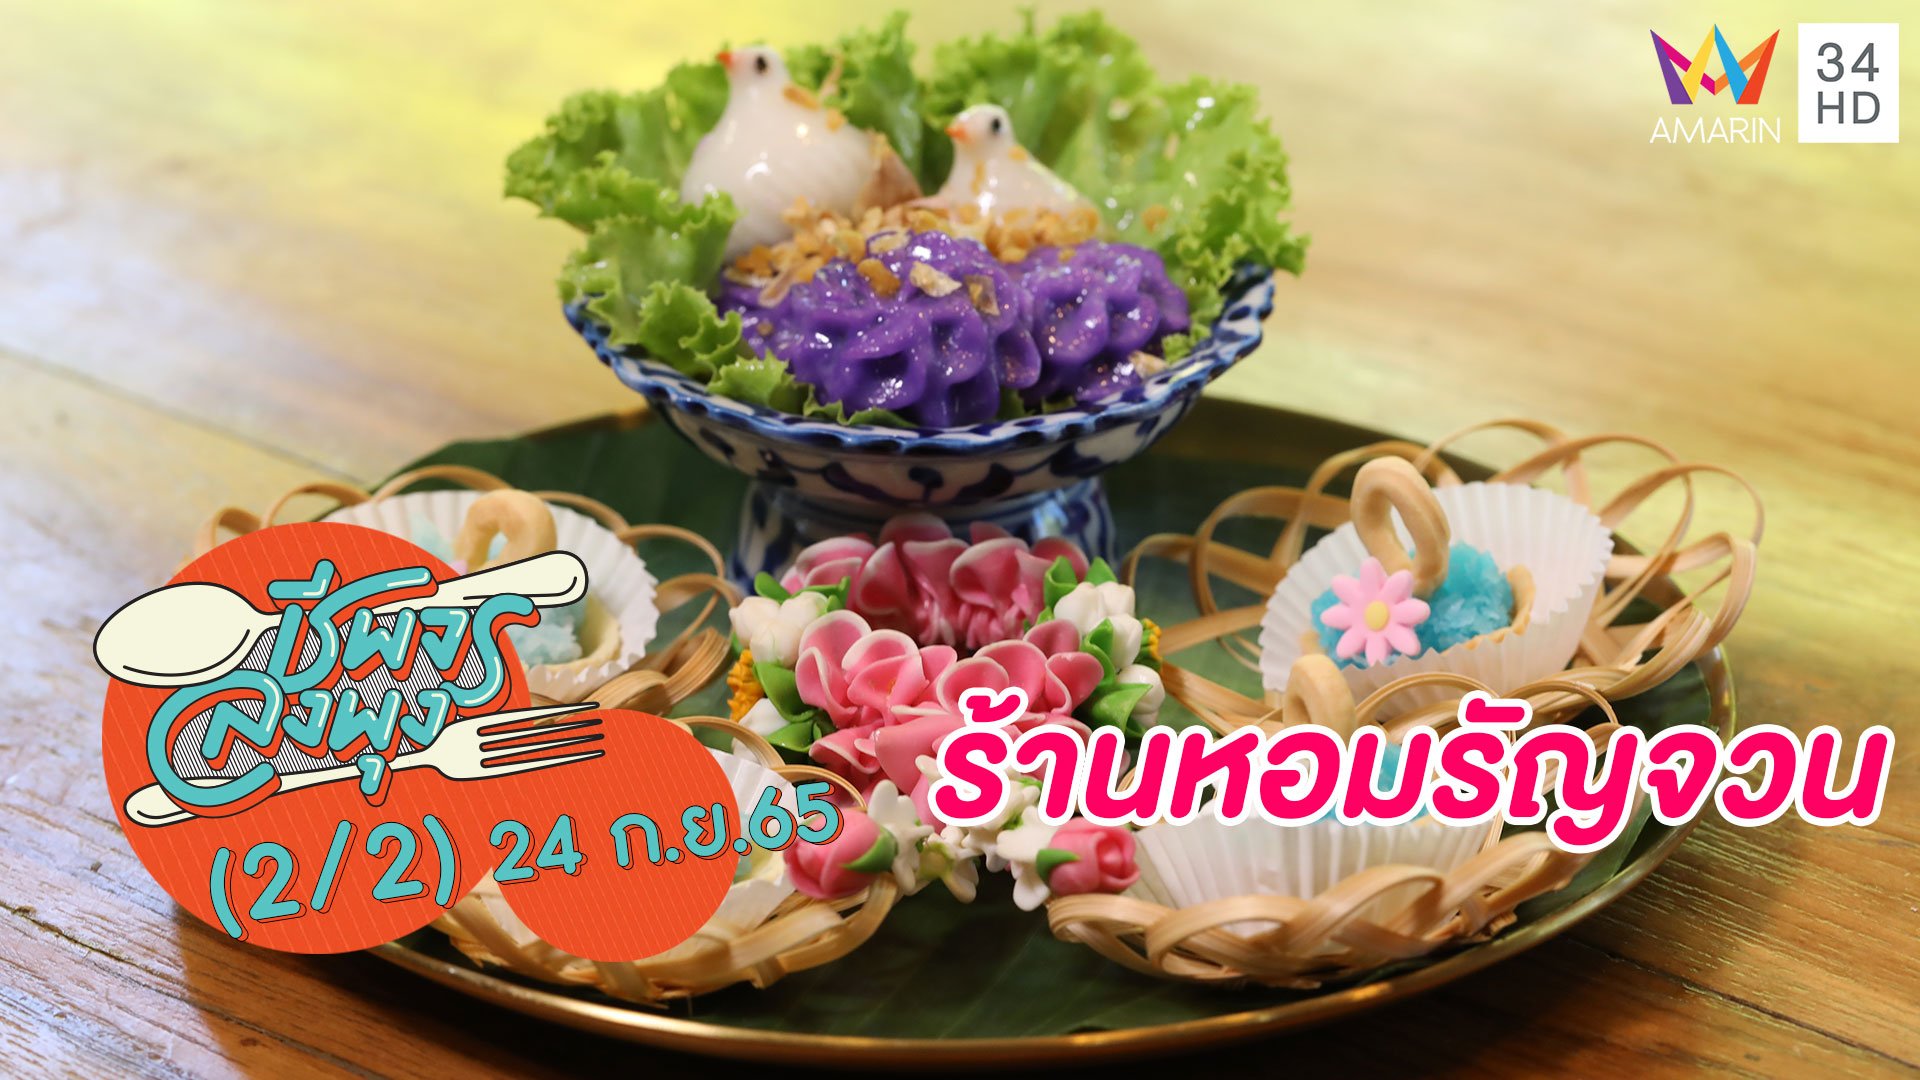 ลิ้มรสขนมไทยหาทานยาก @ร้านหอมรัญจวน | ชีพจรลงพุง | 24 ก.ย. 65 (2/2) | AMARIN TVHD34